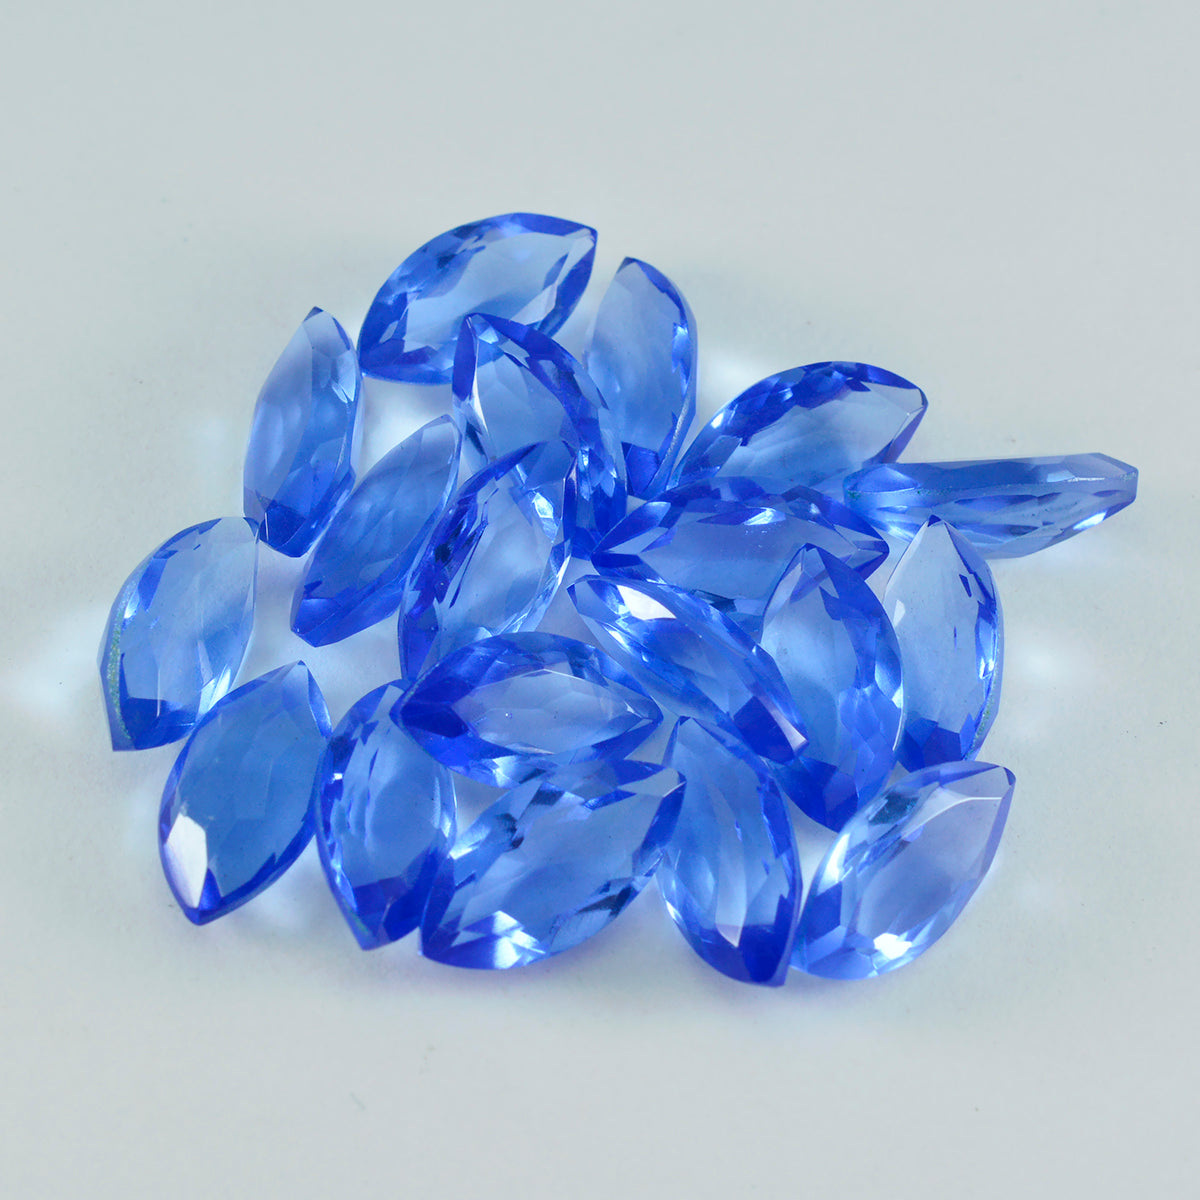 Riyogems 1 Stück blauer Saphir, CZ, facettiert, 6 x 12 mm, Marquise-Form, fantastischer Qualitäts-Edelstein